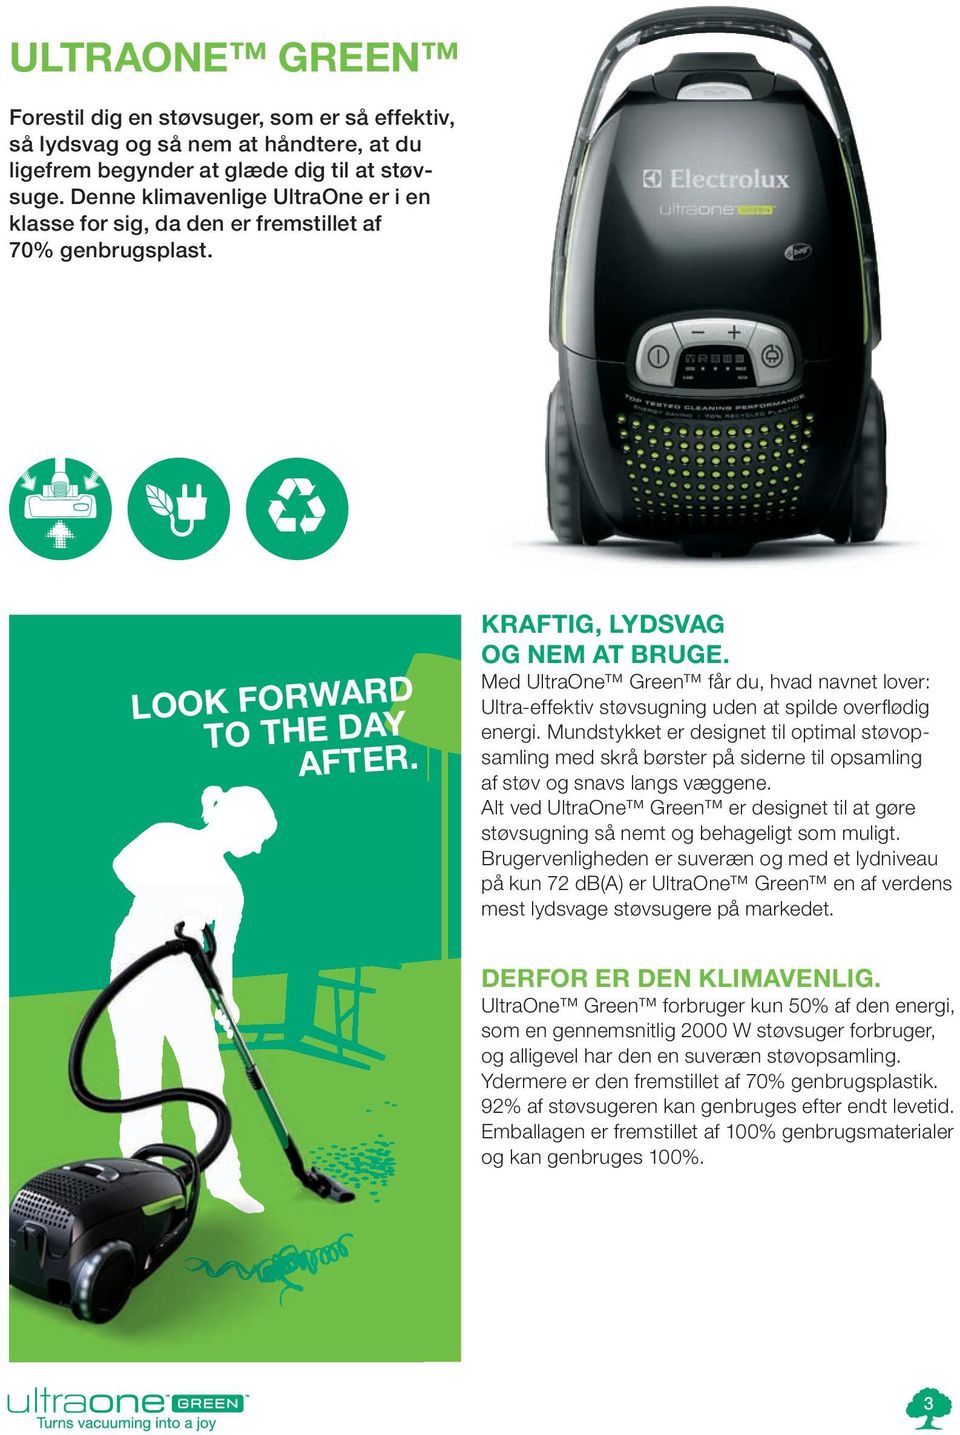 Med UltraOne Green får du, hvad navnet lover: Ultra effektiv støvsugning uden at spilde overflødig energi.